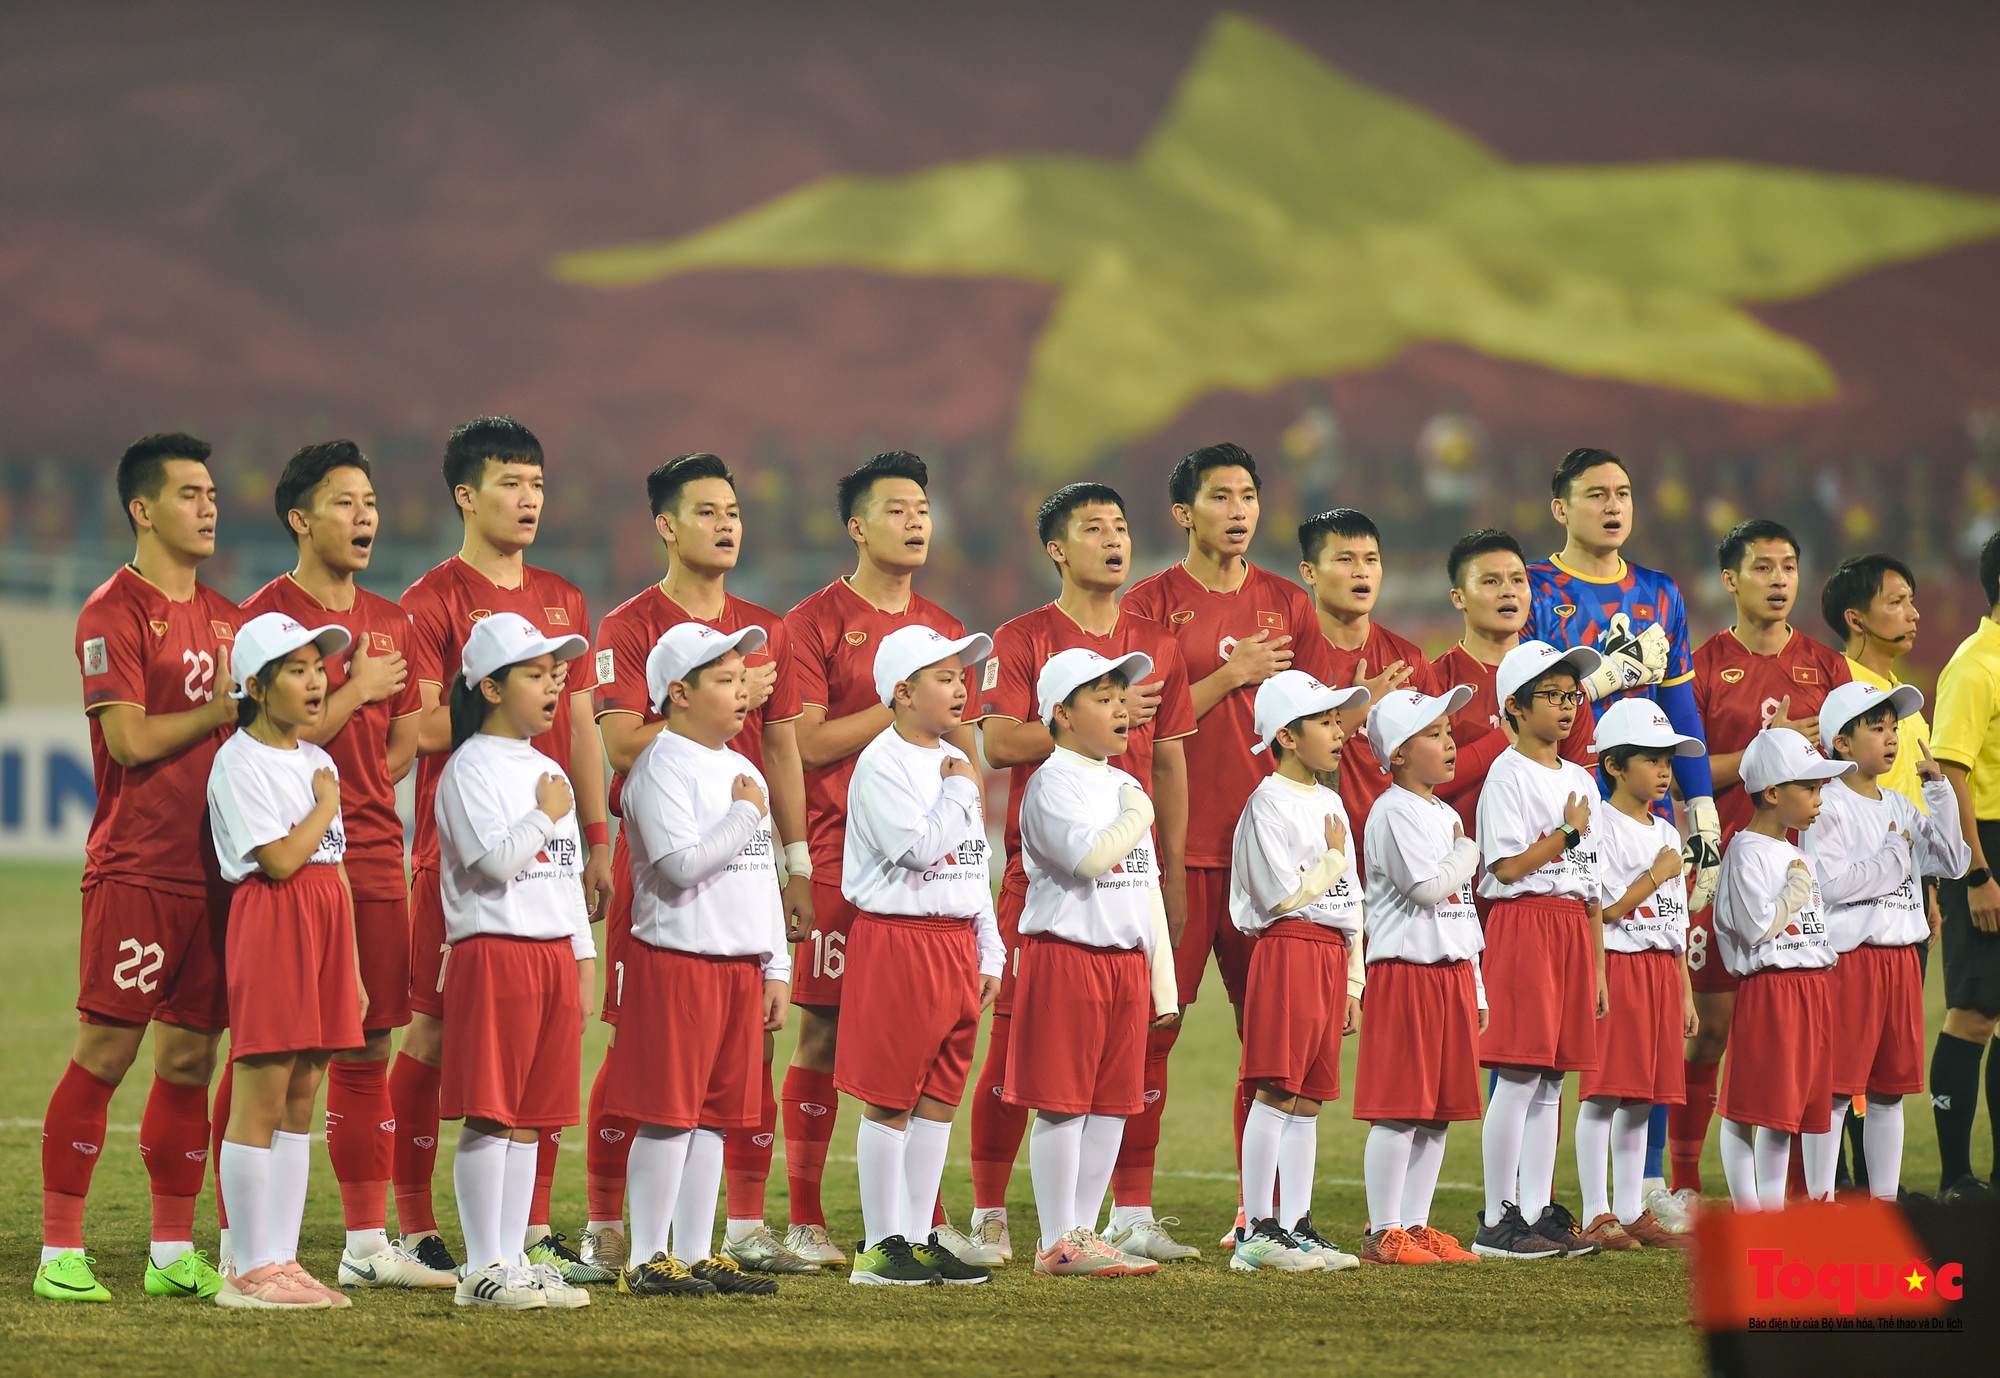 Chùm ảnh Bán kết AFF Cup 2022: Niềm vui chiến thắng của cầu thủ, cổ động viên Việt Nam trên sân Mỹ Đình - Ảnh 1.